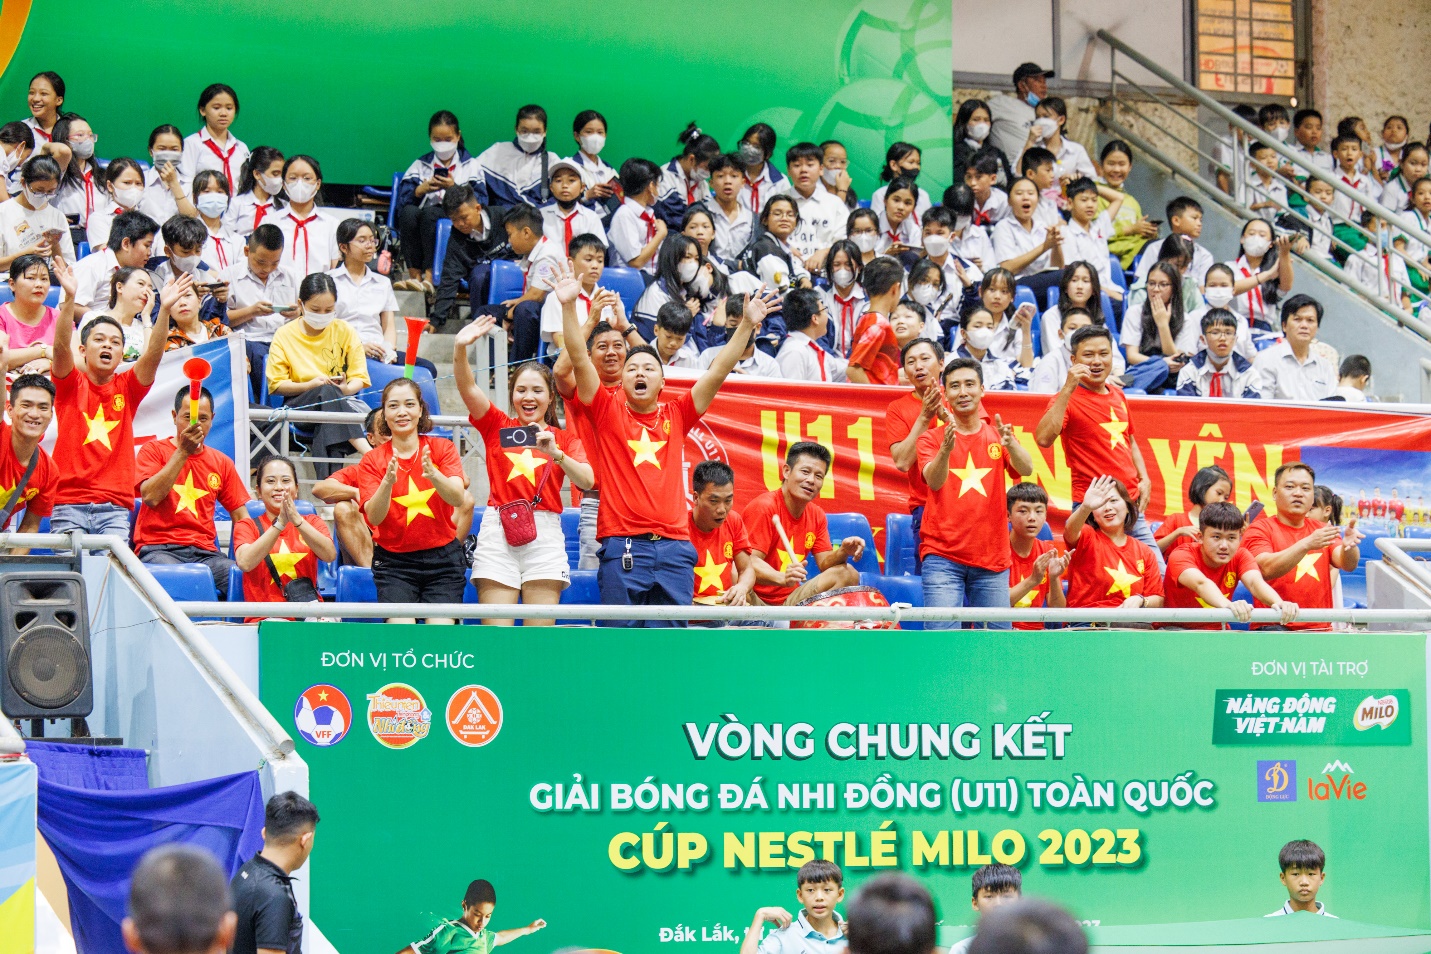 Bế mạc giải bóng đá nhi đồng (U11) toàn quốc, Nestlé MILO trao tặng 16 học bổng “Có chí thì nên” - Ảnh 3.